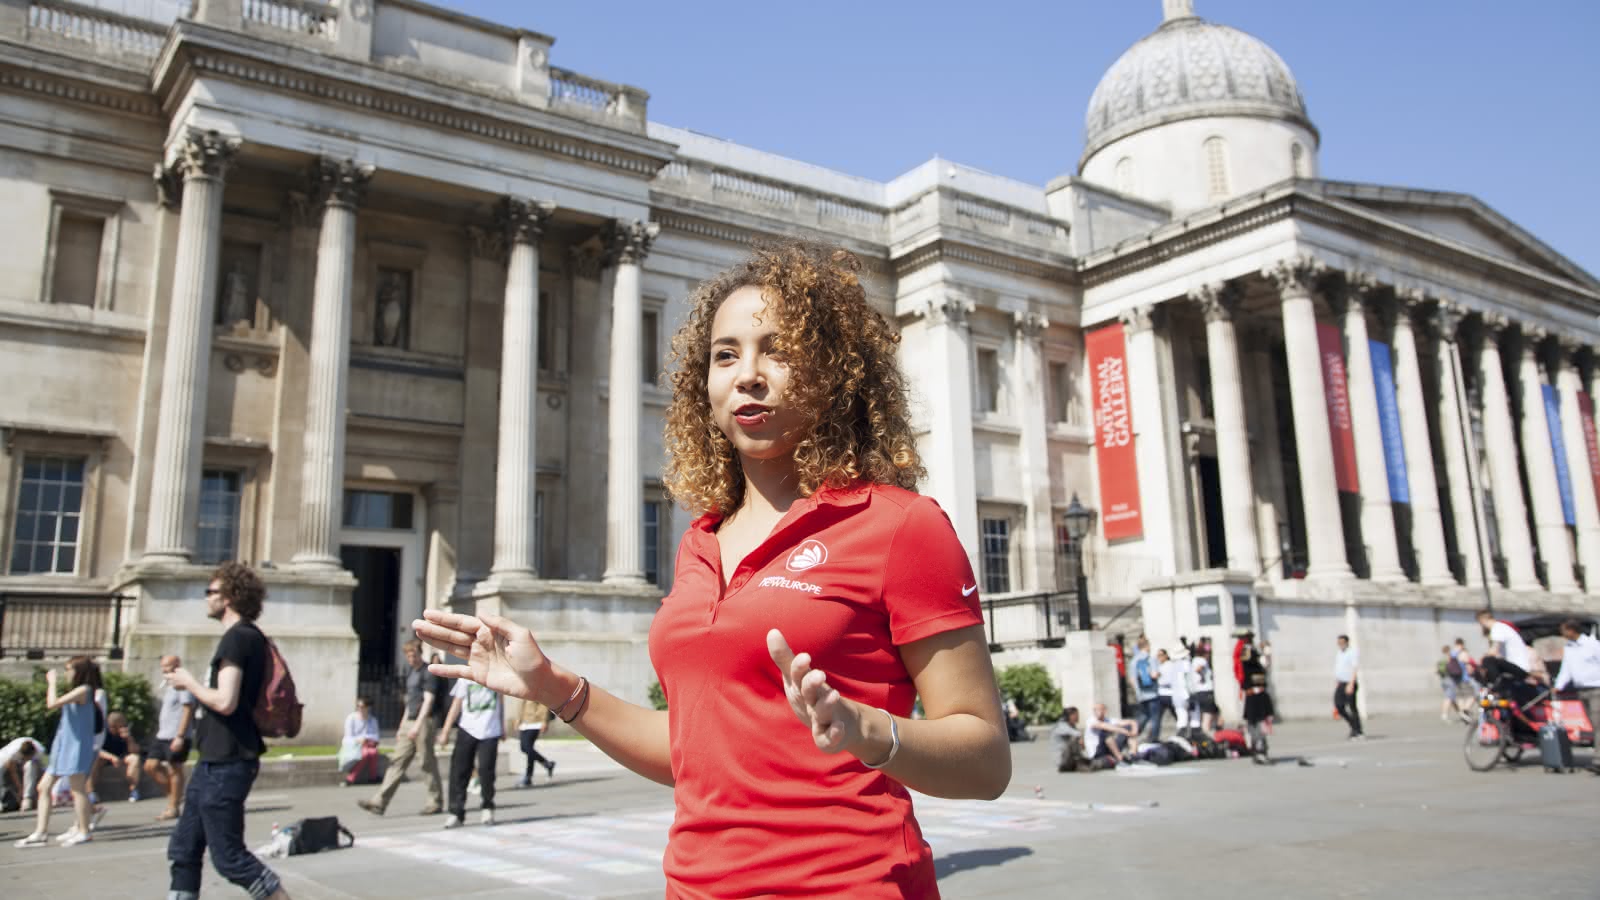 london free tour guide in trafalgar square